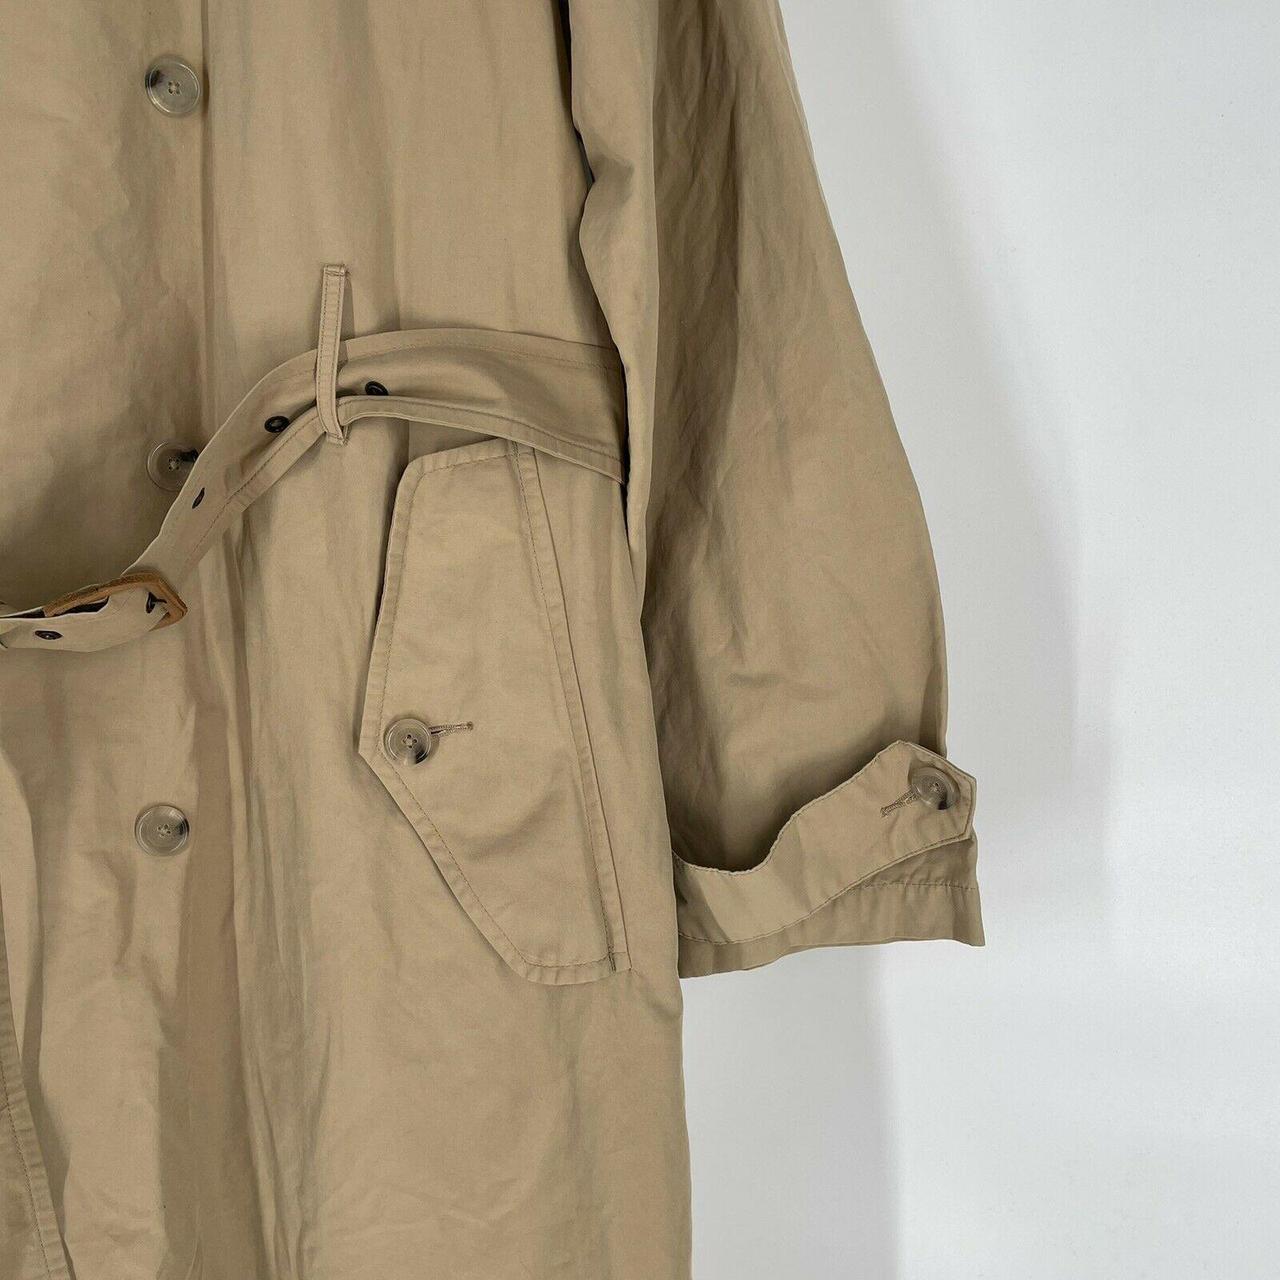 Polo Ralph Lauren Men's Beige Belted Trench Coat... - Depop